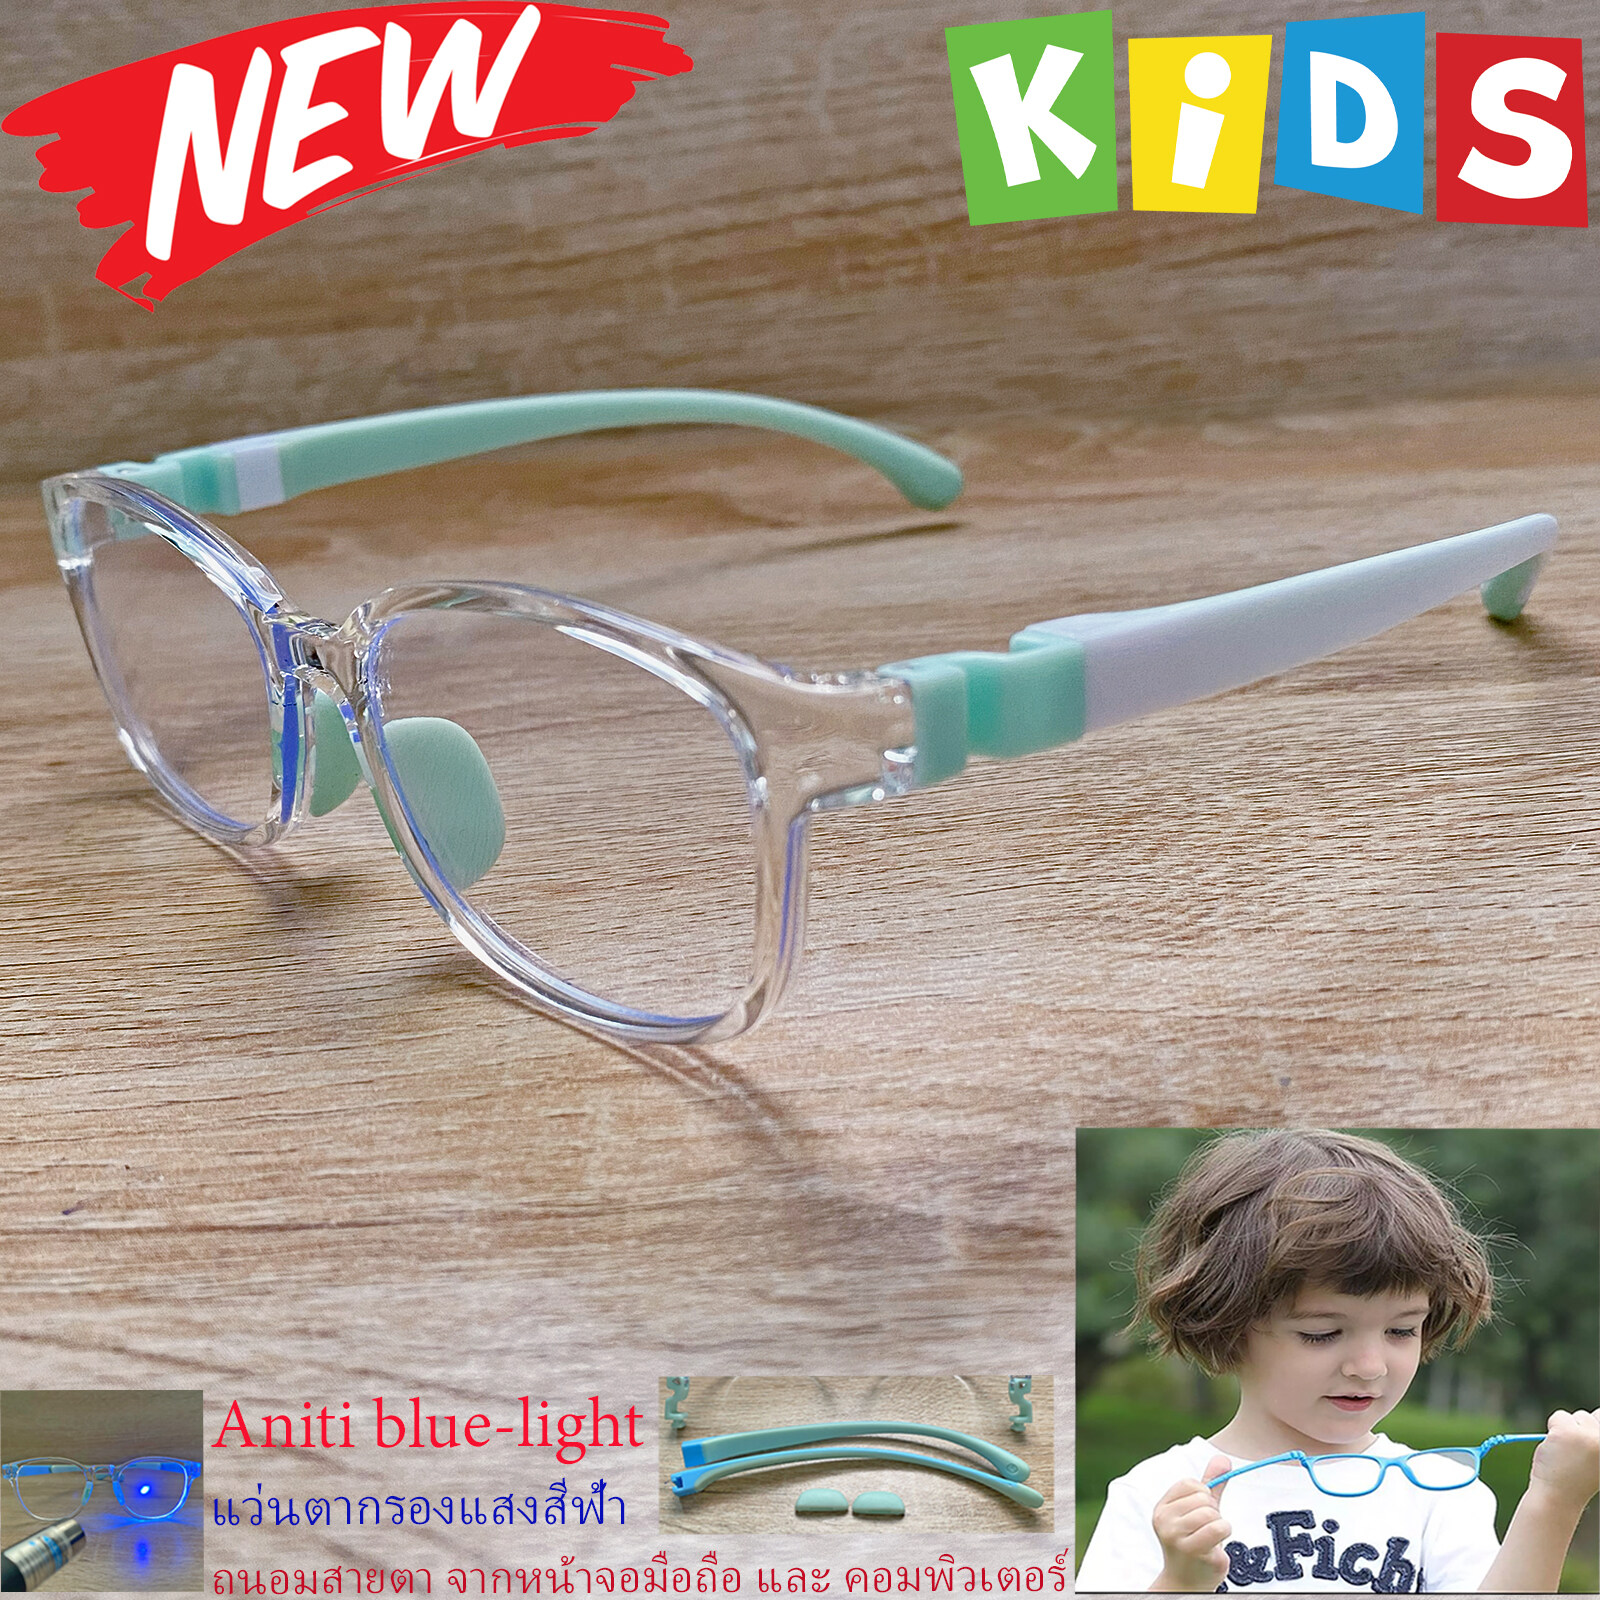 แว่นตาเด็กกรองแสง สีฟ้า blue block กรอบแว่นเด็ก บลูบล็อค รุ่นTRD-03 ขาข้อต่อยืดหยุ่น ถอดขาเปลี่ยนได้ วัสดุTR90 เหมาะสำหรับเลนส์สายตา